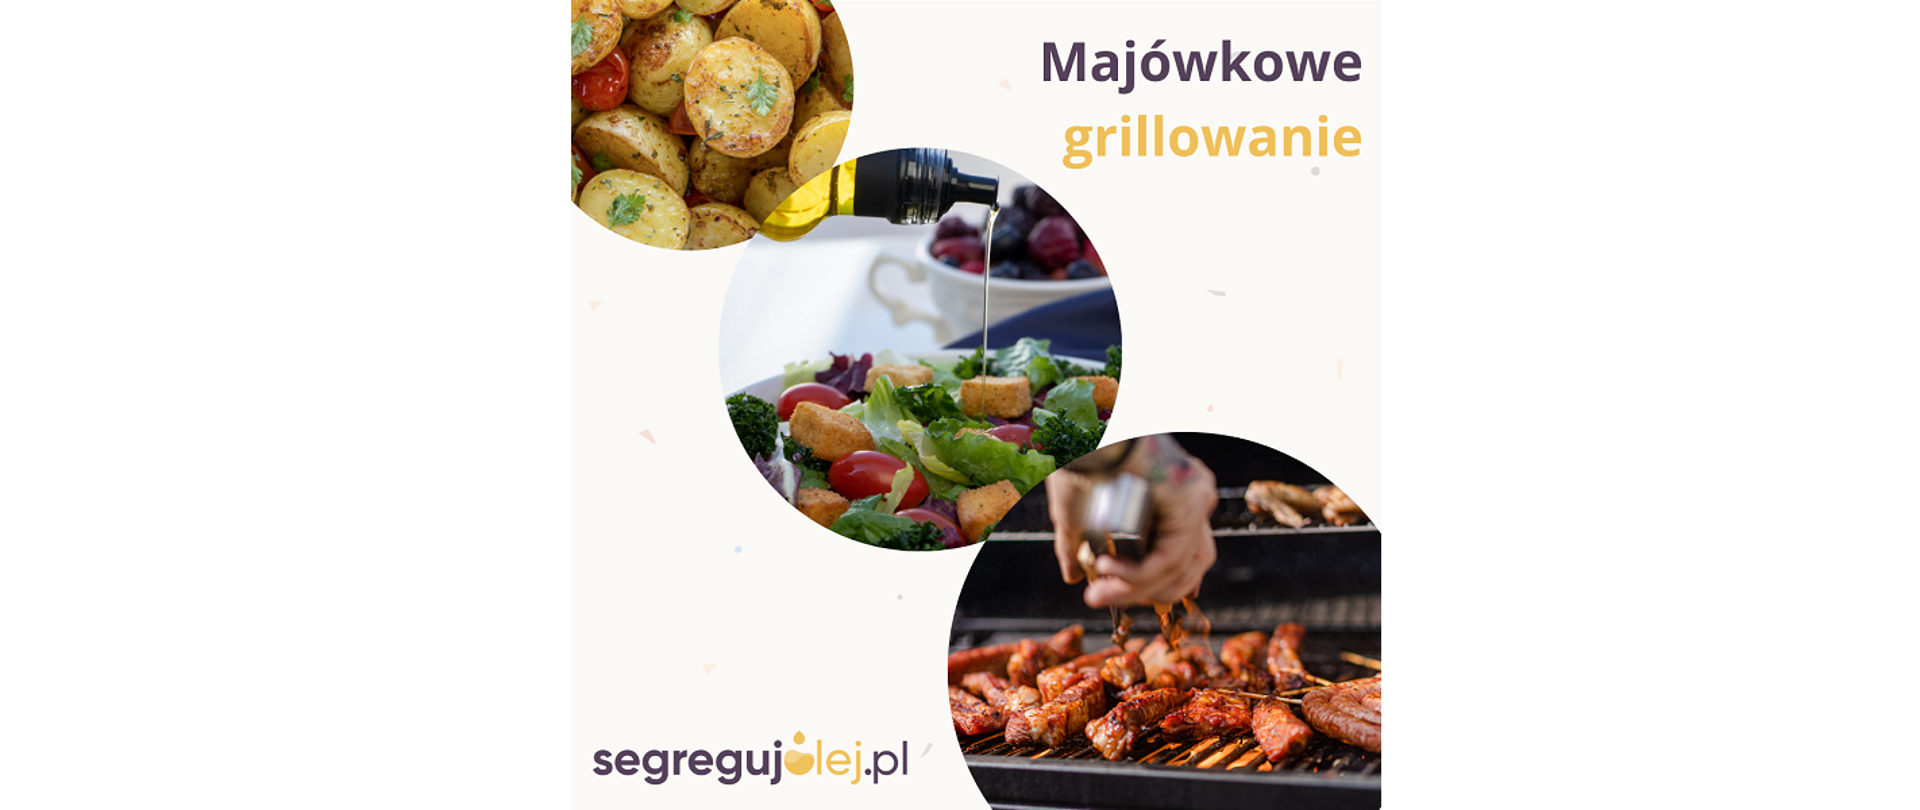 Plakat segregujolej.pl. Majówkowe grillowanie. Widoczne w trzech kołach potrawy przyrządzane na grillu